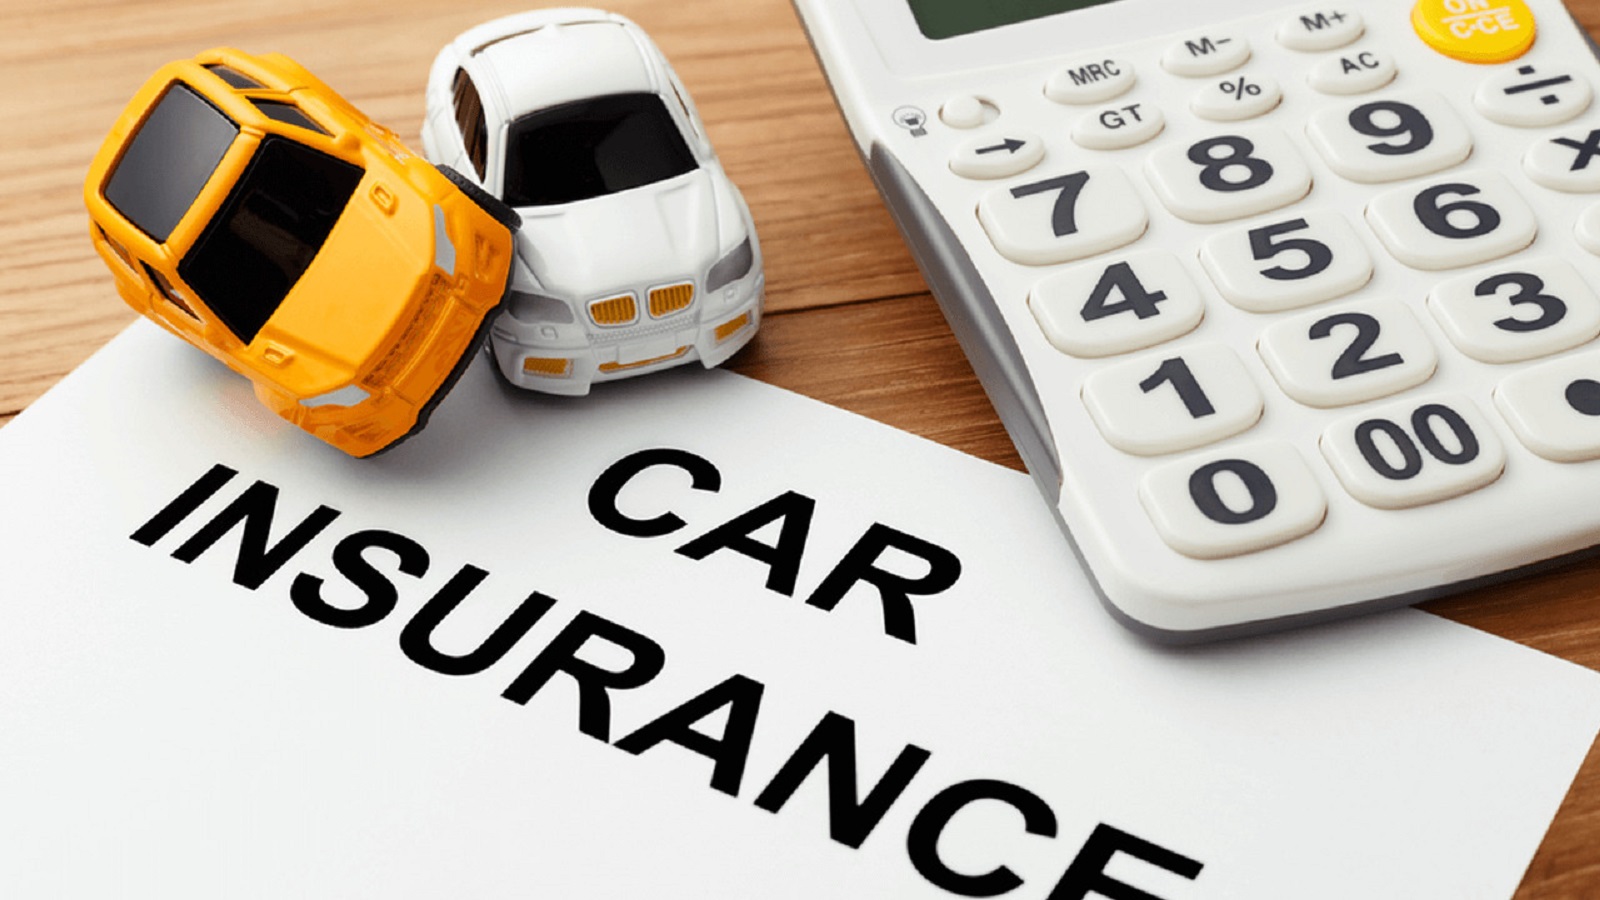 Bảo hiểm trách nhiệm dân sự là gói bảo hiểm bắt buộc dành cho ô tô khi mua